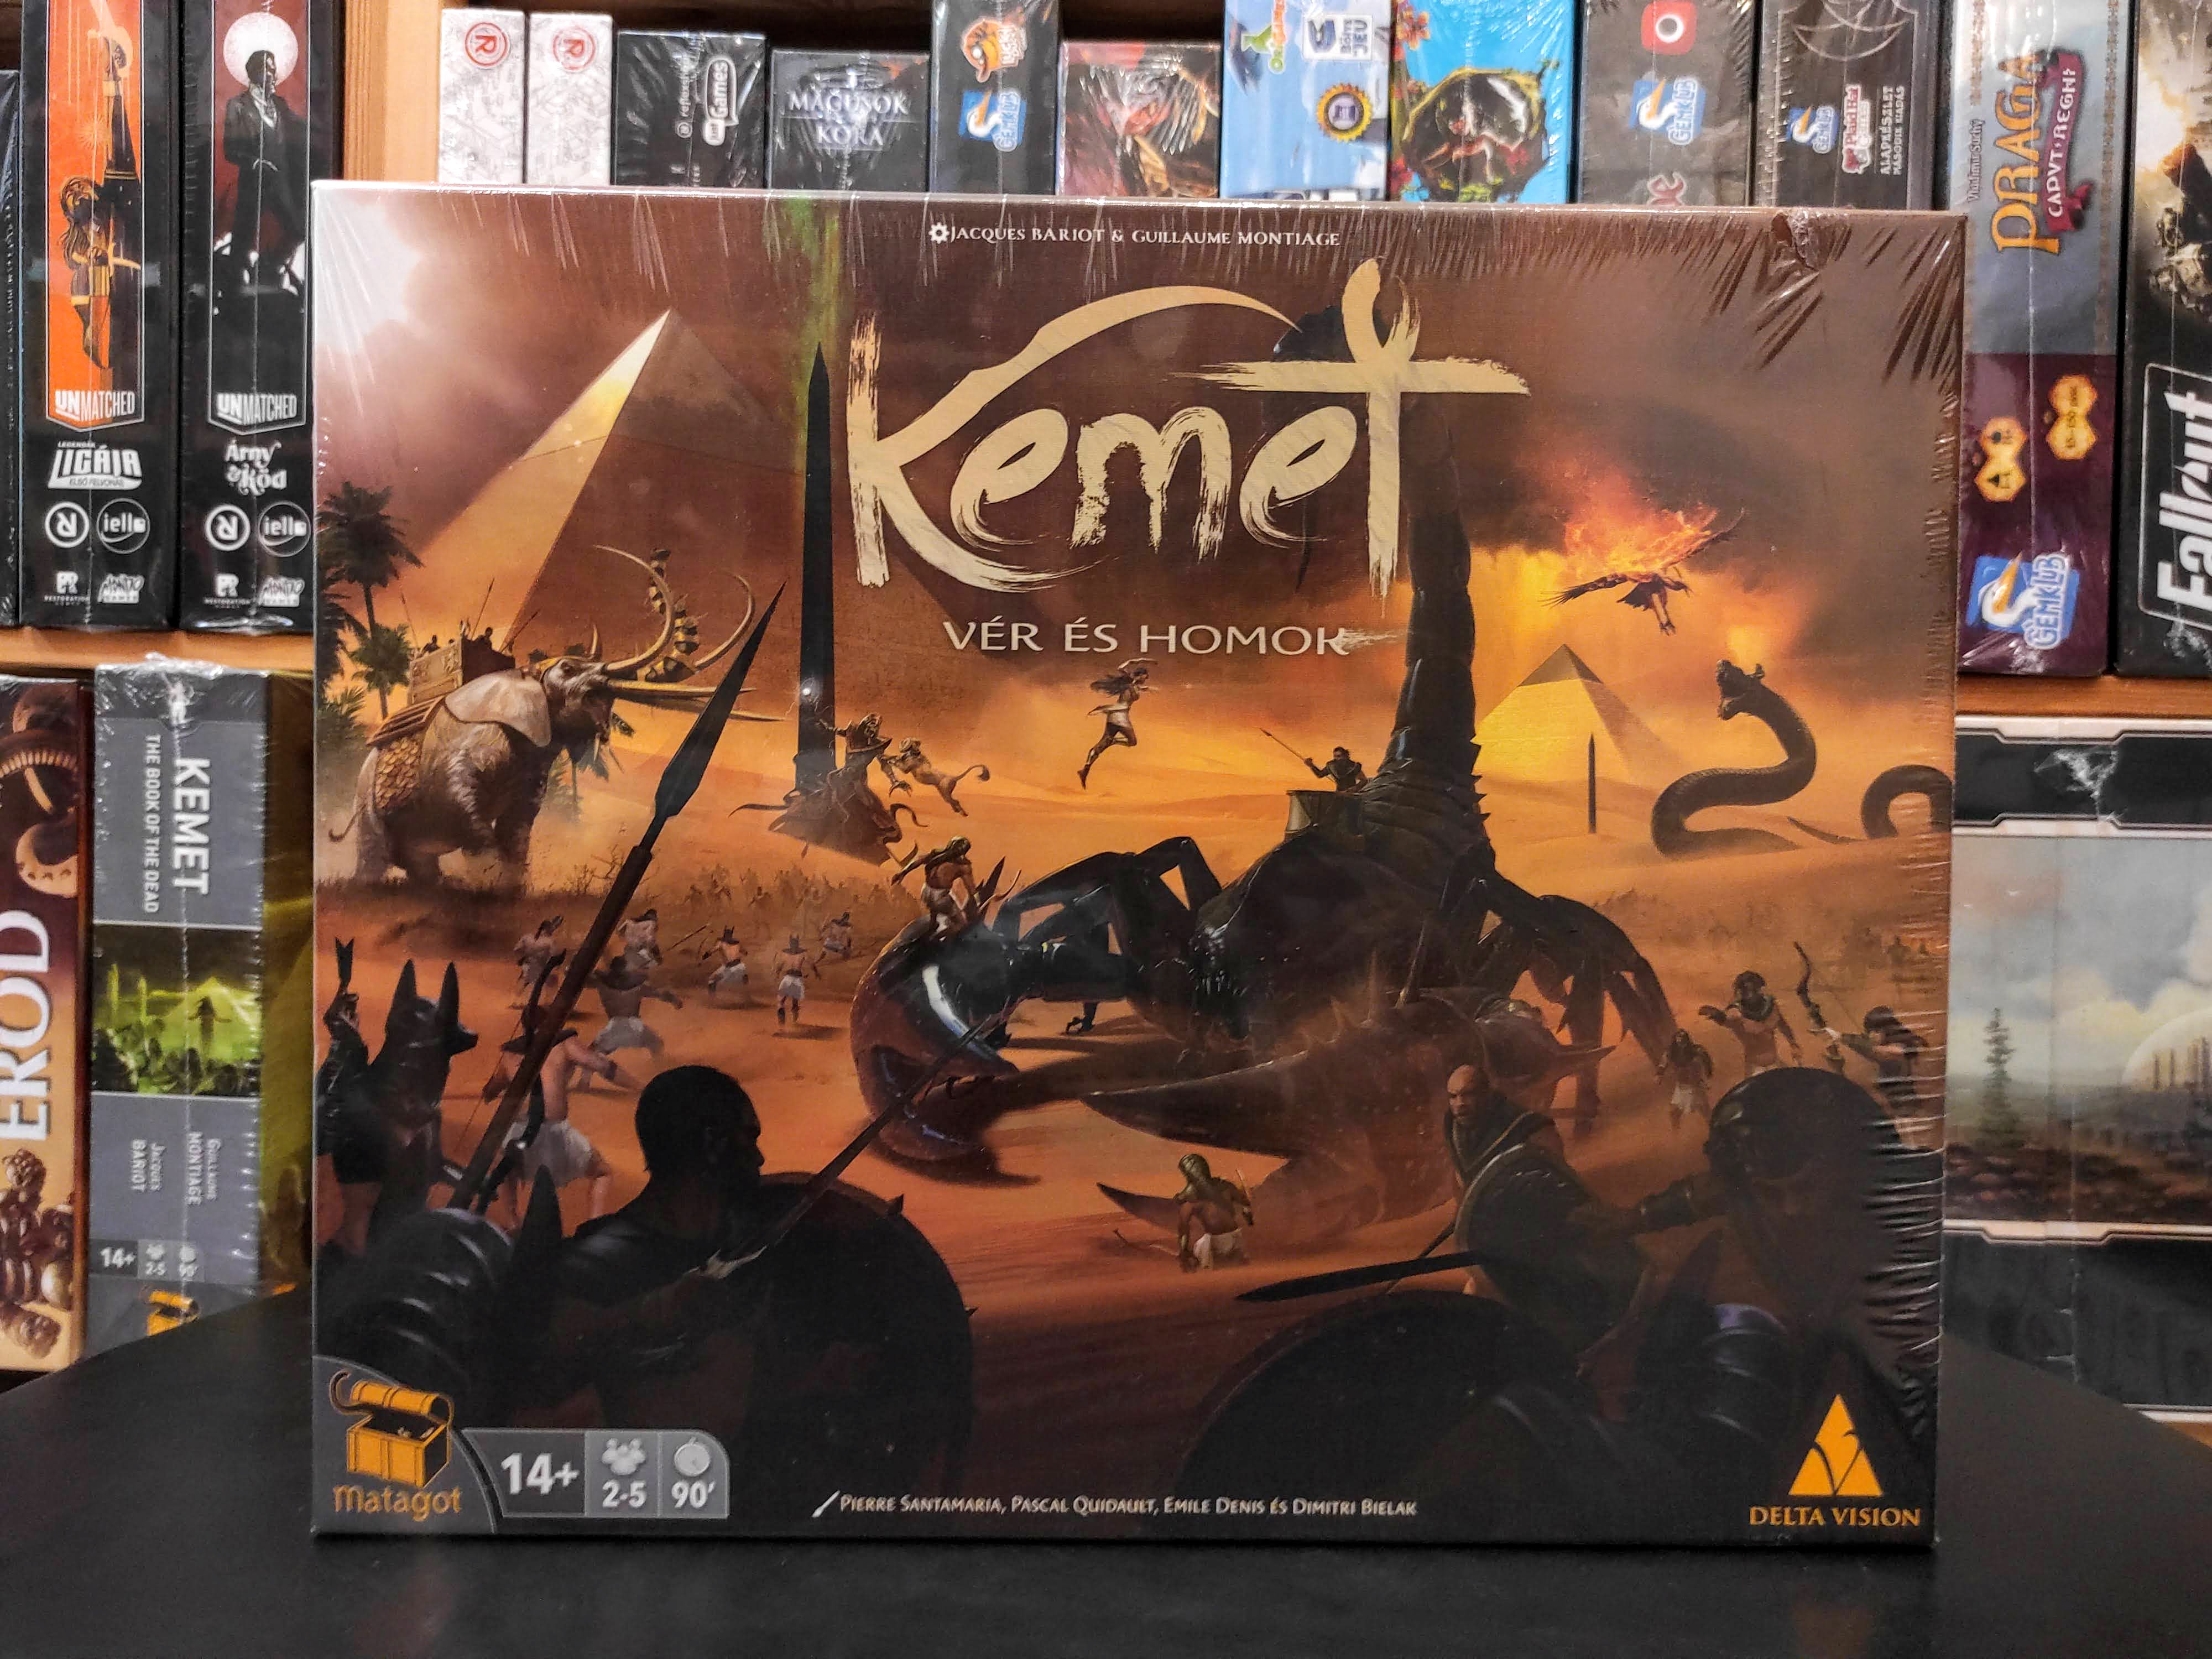 Kemet - Vér és homok társasjáték,  Kemet: Blood and Sand